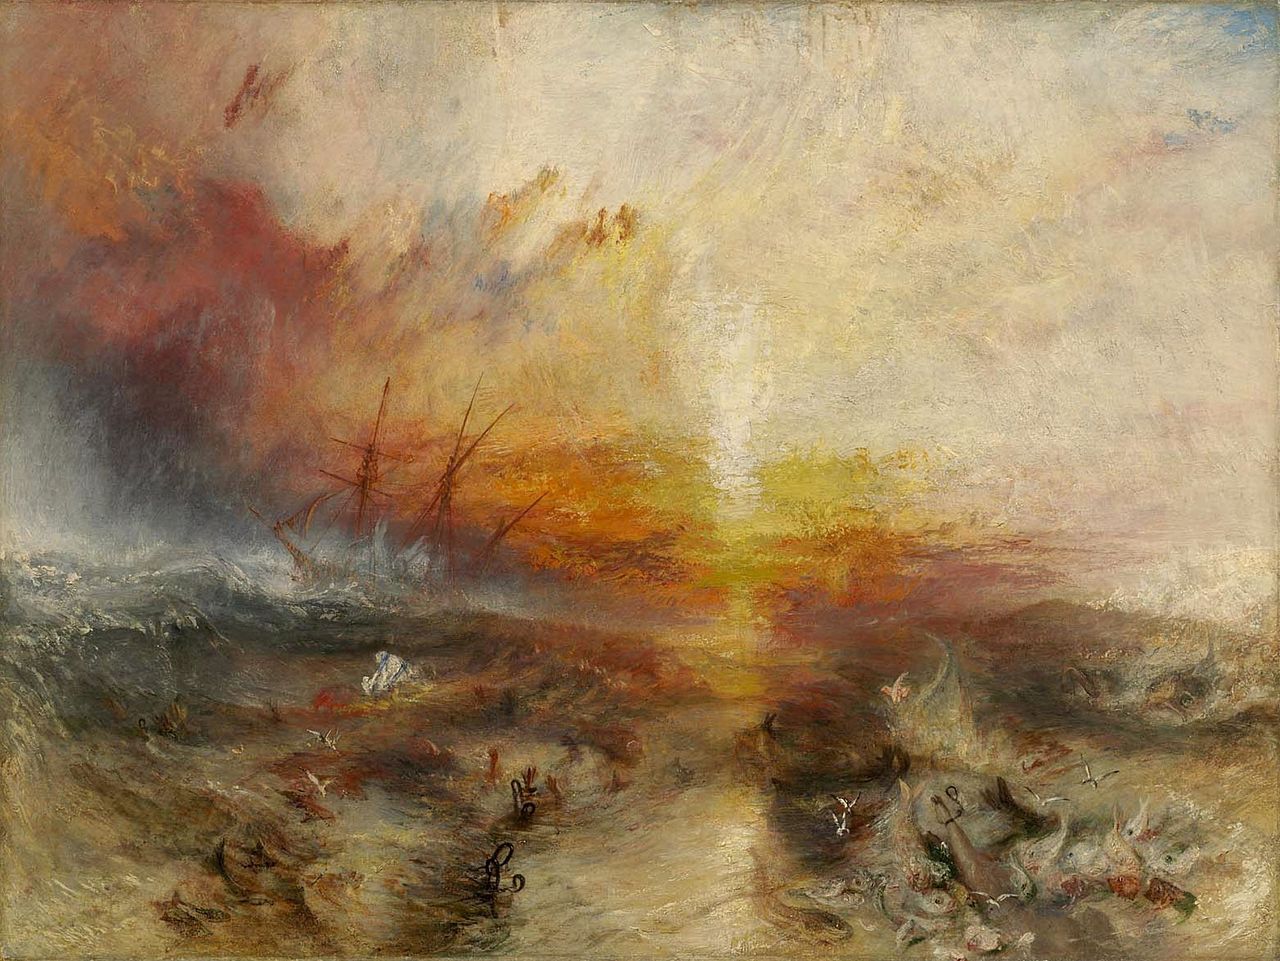 Esir Gemisi (Ölüleri ve Ölmekte Olanları Denize Atan Esirler) by Joseph Mallord William Turner - 1814 - 90.8 x 122.6 cm 